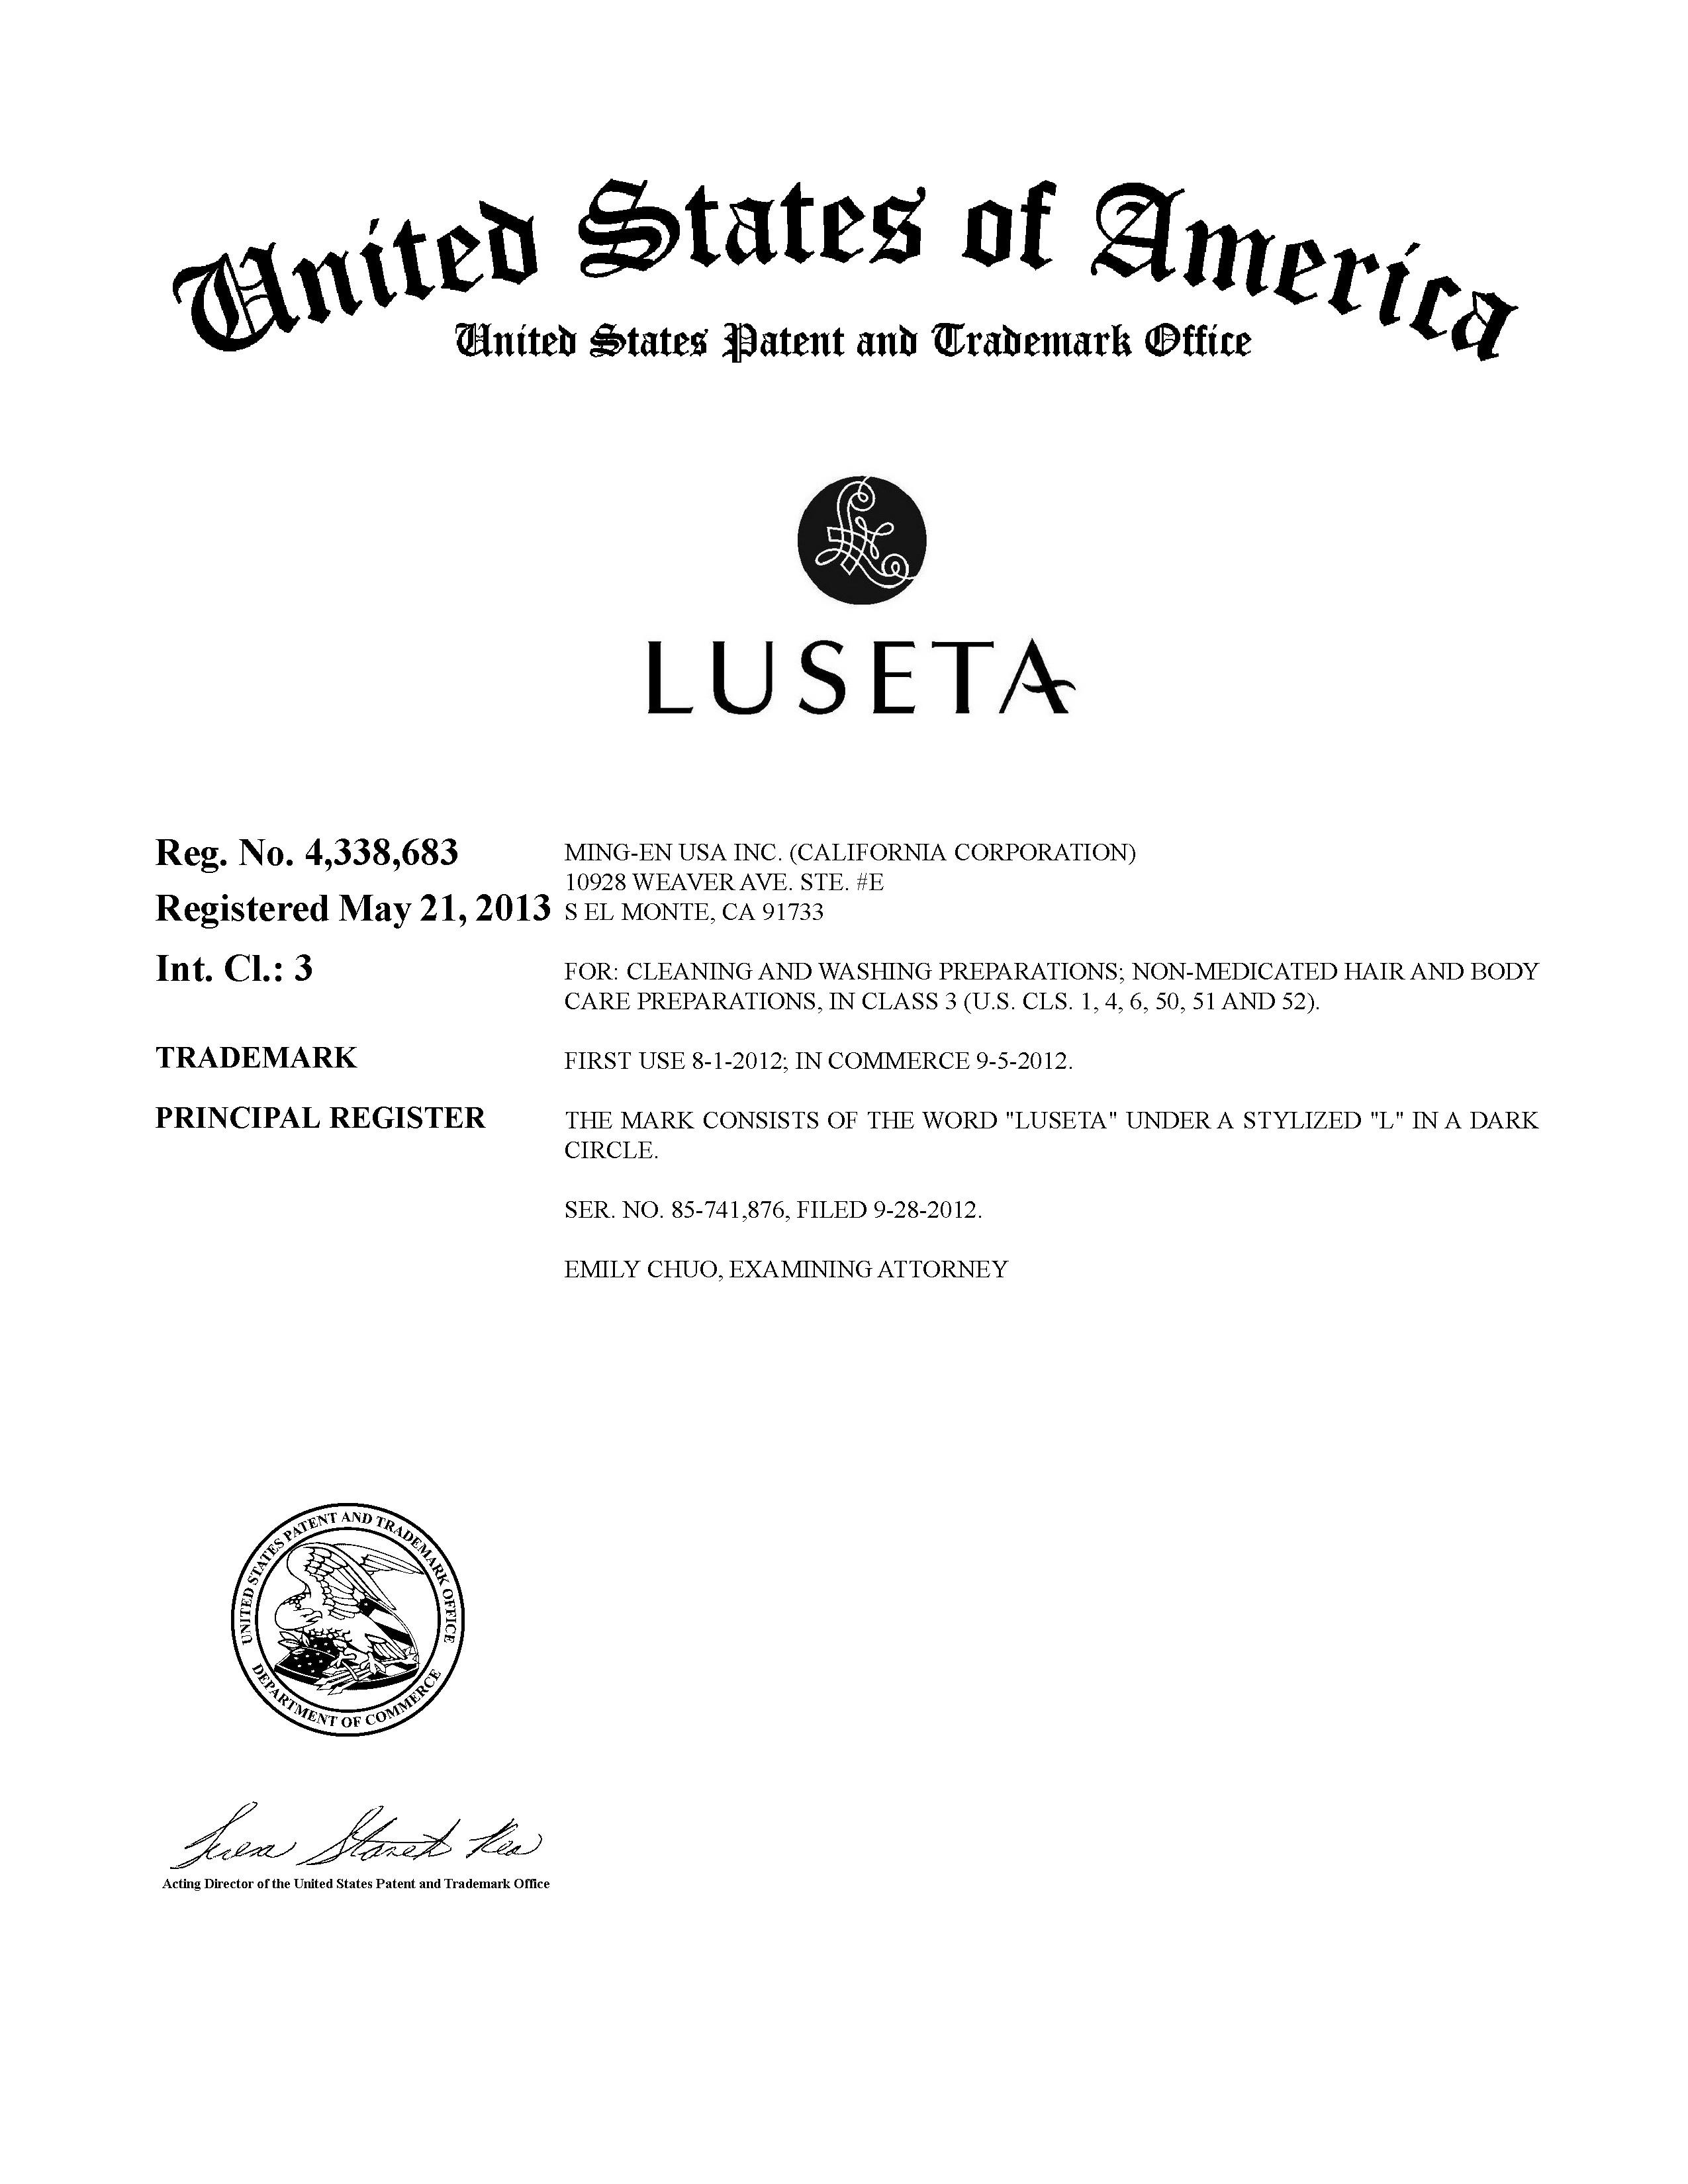 DOC MILLER Trademark of Catalunya Trade Impex LLC - Registration